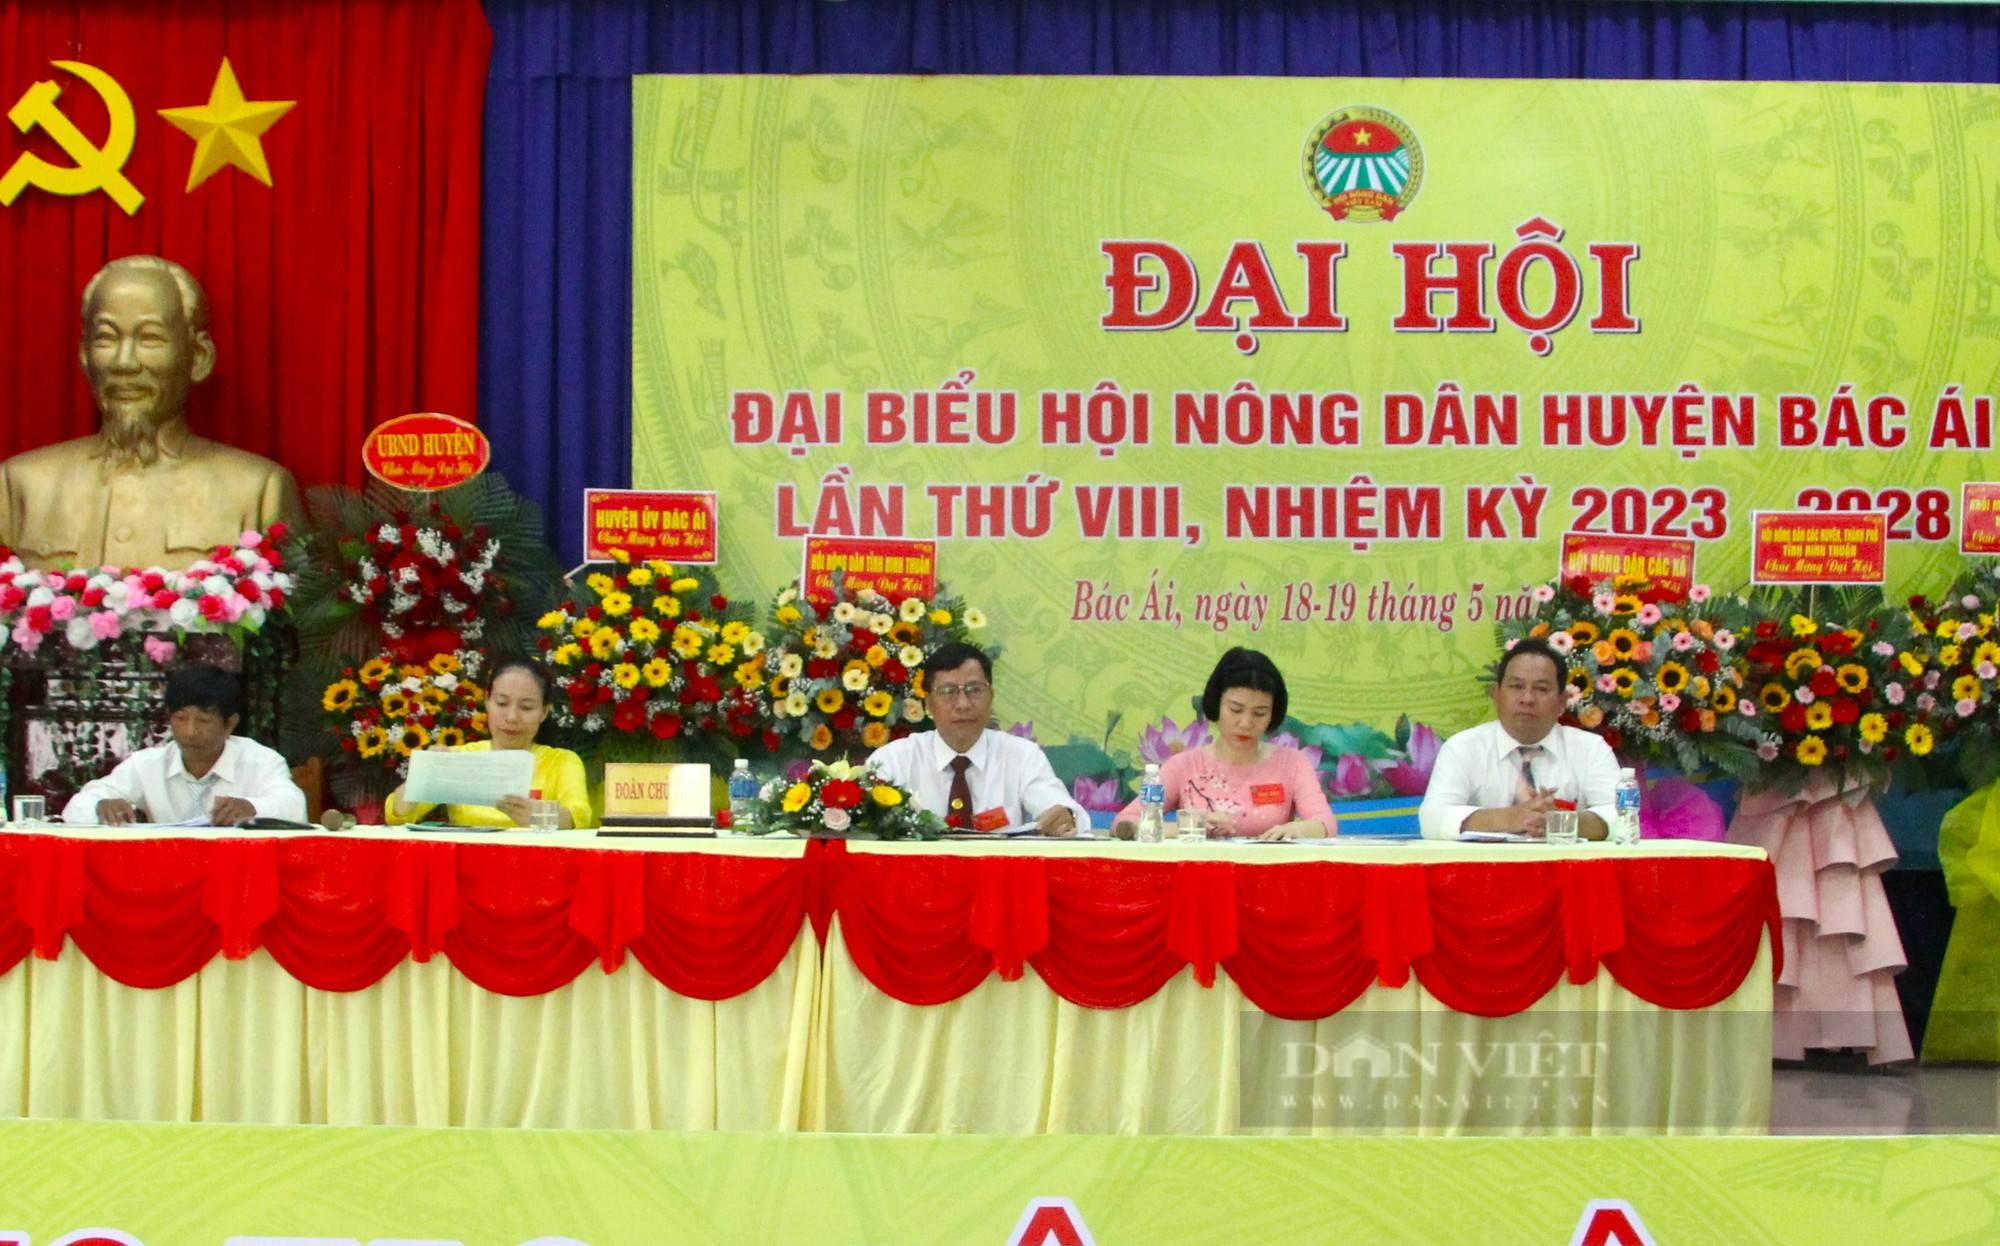 Đại Hội Đại biểu Hội Nông dân huyện Bác Ái ở Ninh Thuận, ông Nguyễn Đức Nghĩa tái đắc cử Chủ tịch - Ảnh 3.